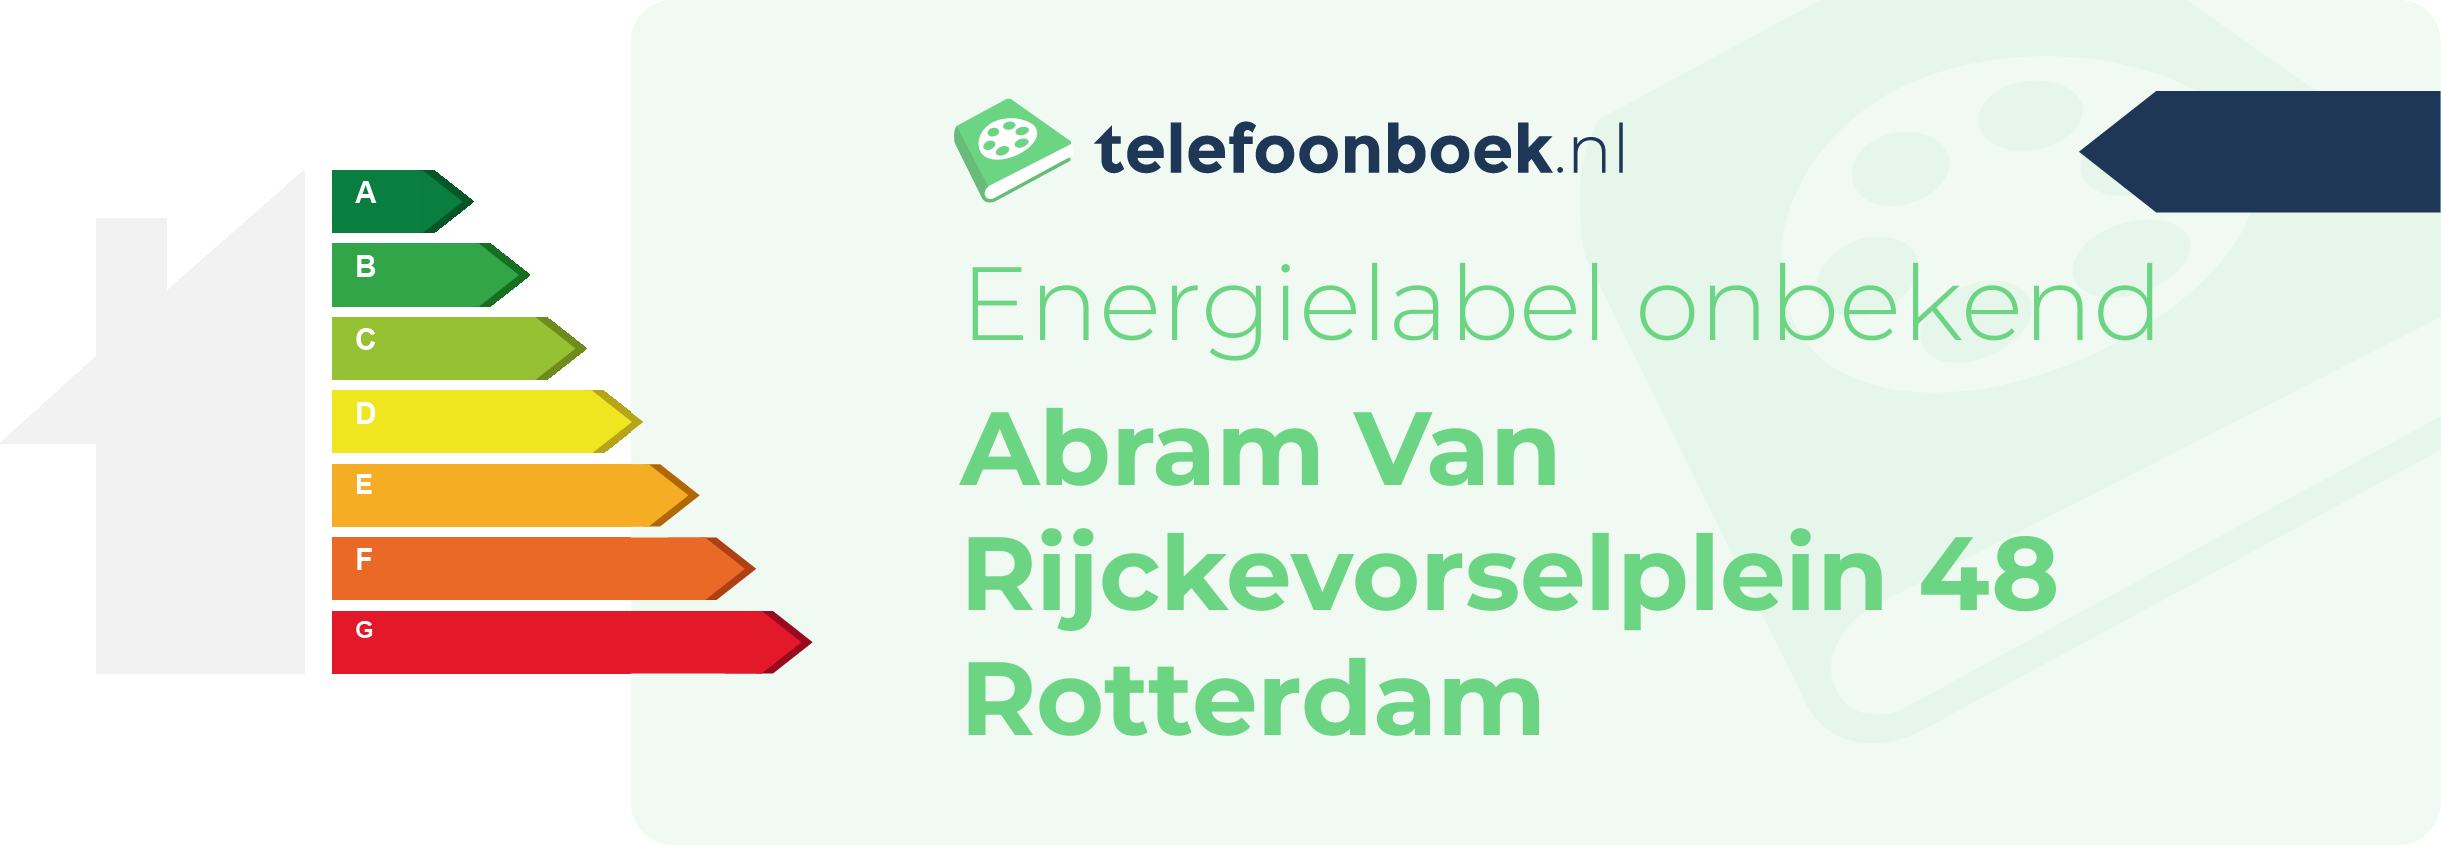 Energielabel Abram Van Rijckevorselplein 48 Rotterdam